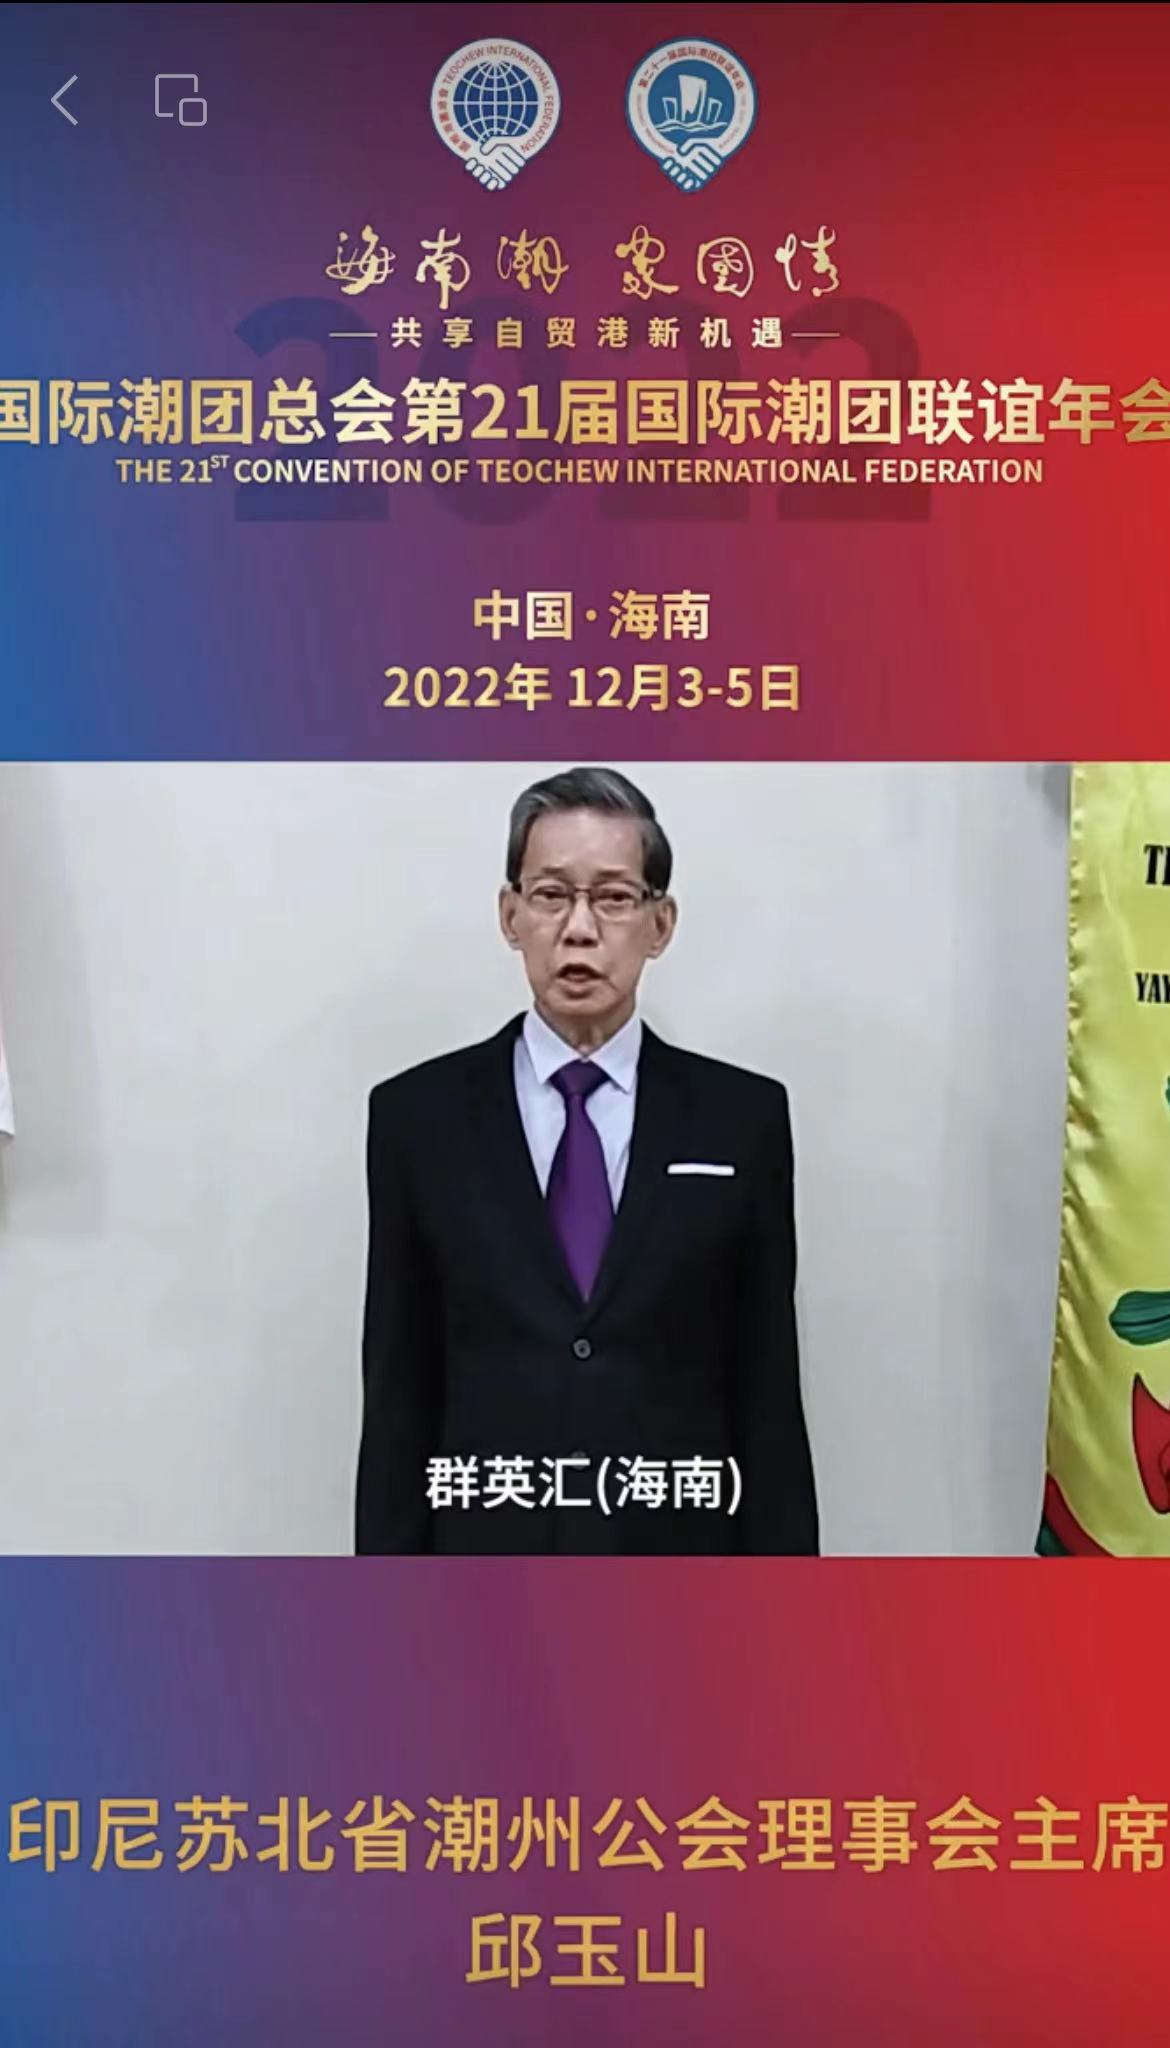 印尼苏北省潮州公会理事会主席邱玉山发来祝贺视频，为第21届国际潮团联谊年会加油助力